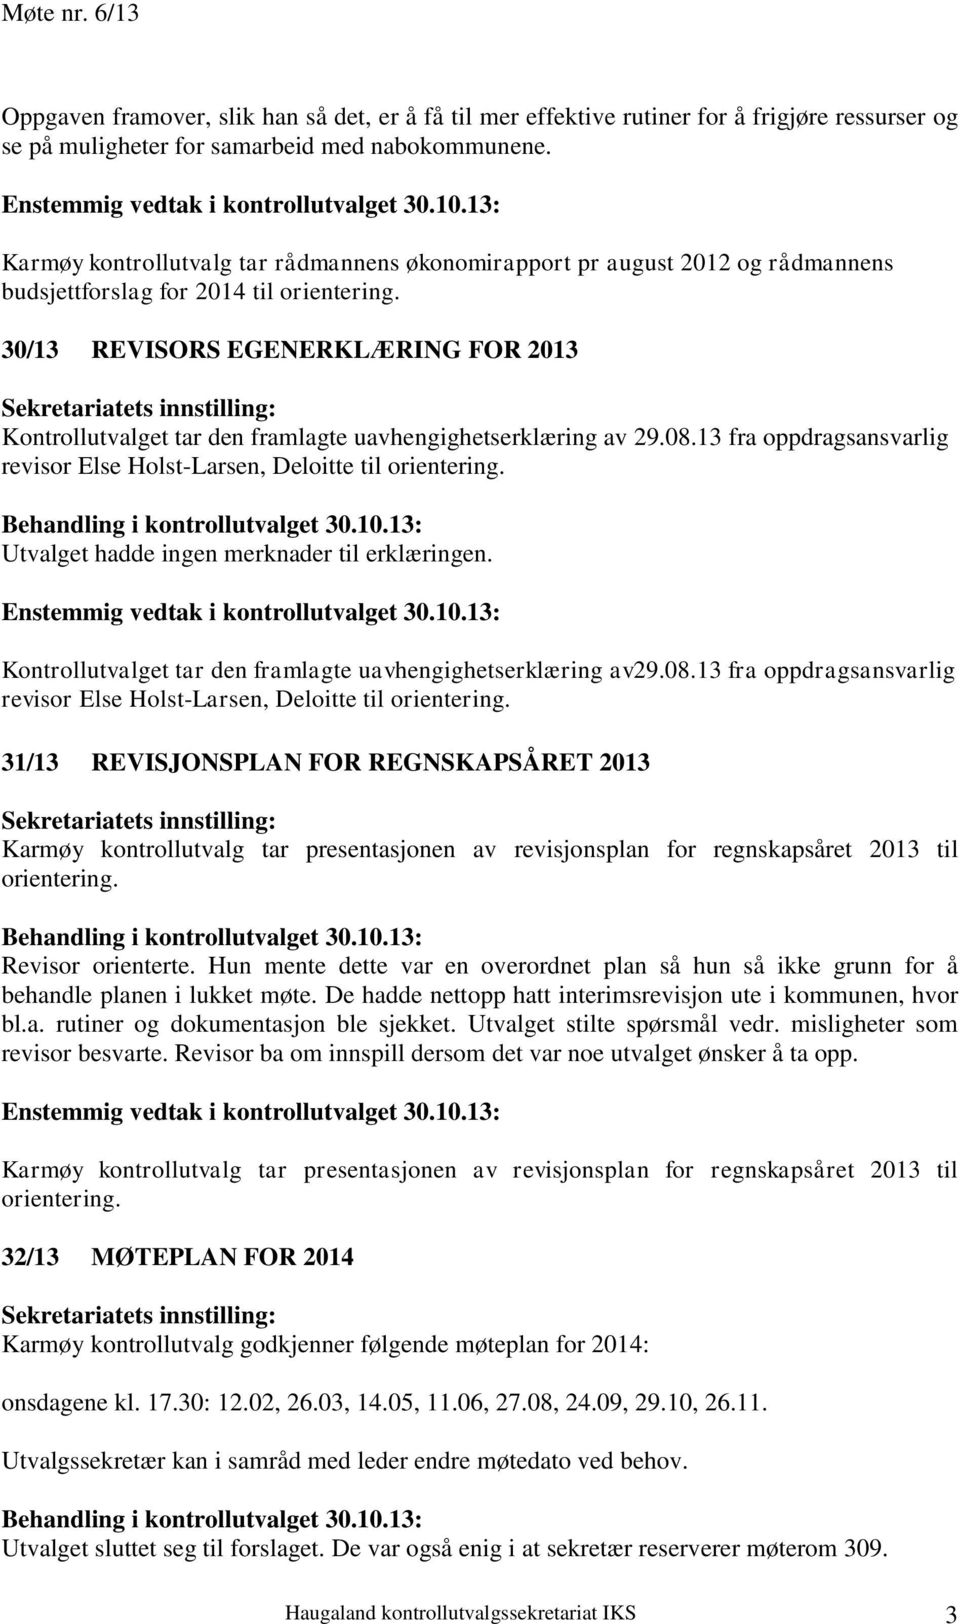 30/13 REVISORS EGENERKLÆRING FOR 2013 Kontrollutvalget tar den framlagte uavhengighetserklæring av 29.08.13 fra oppdragsansvarlig revisor Else Holst-Larsen, Deloitte til orientering.